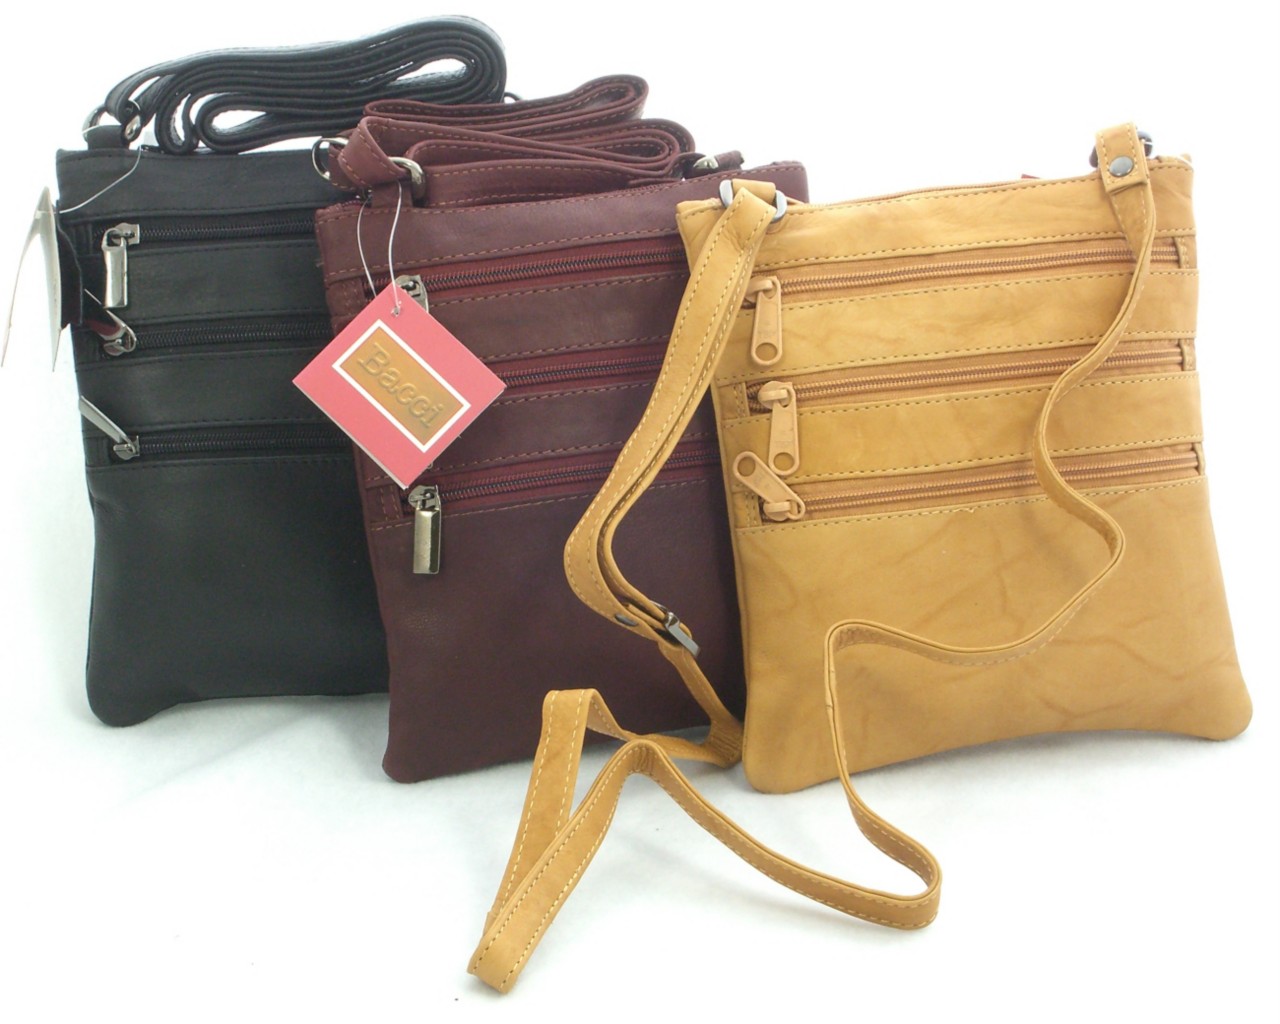 Leather Small Crossbody Bag Handbag Purse w pockets NWT | eBay